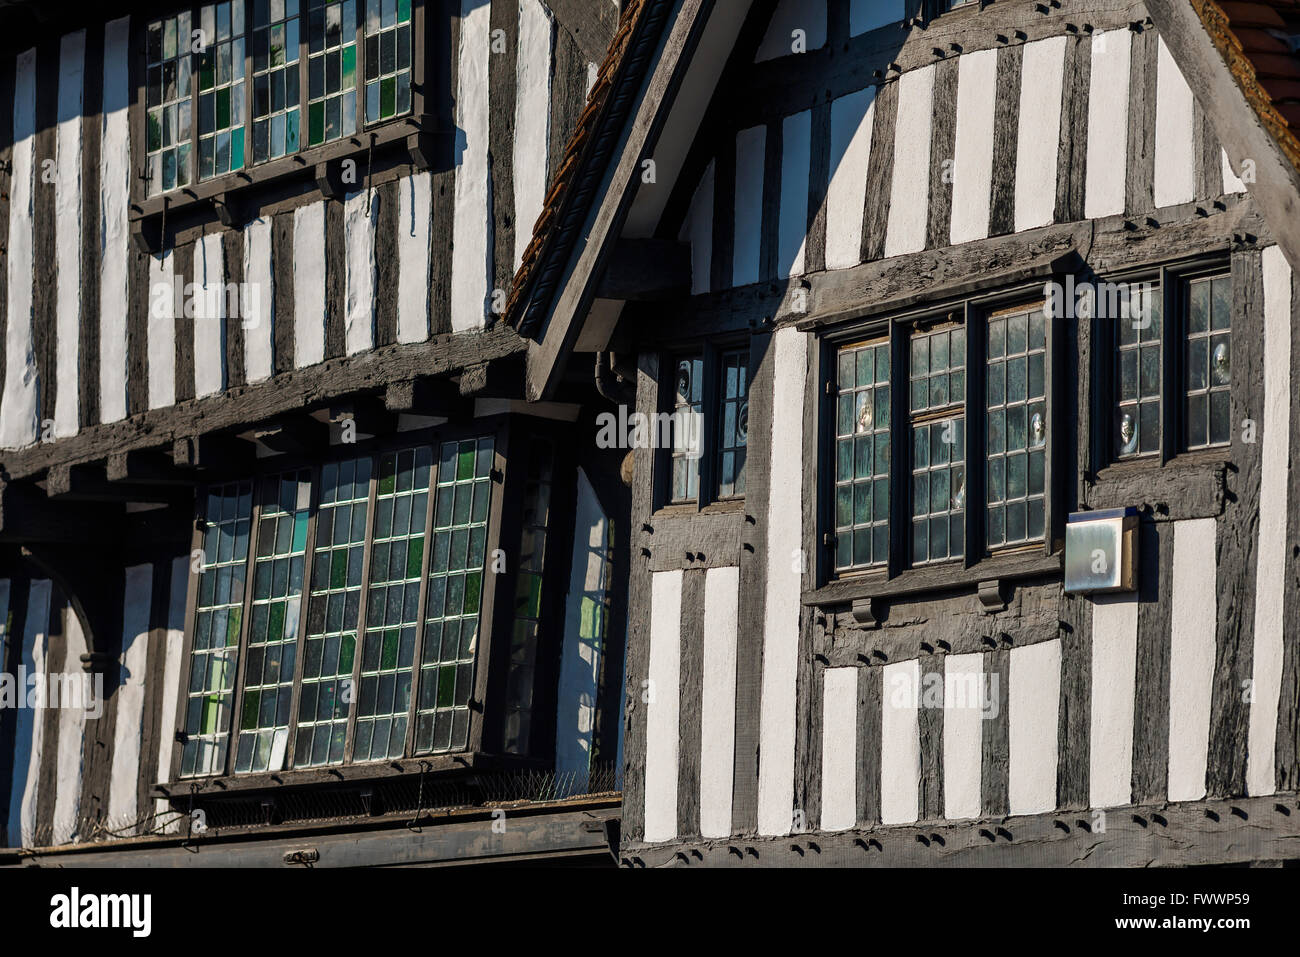 Bâtiment médiéval Angleterre, détail fenêtre de cas d'un bâtiment médiéval à colombages typique dans le centre de Stratford Upon Avon, Angleterre, Royaume-Uni. Banque D'Images